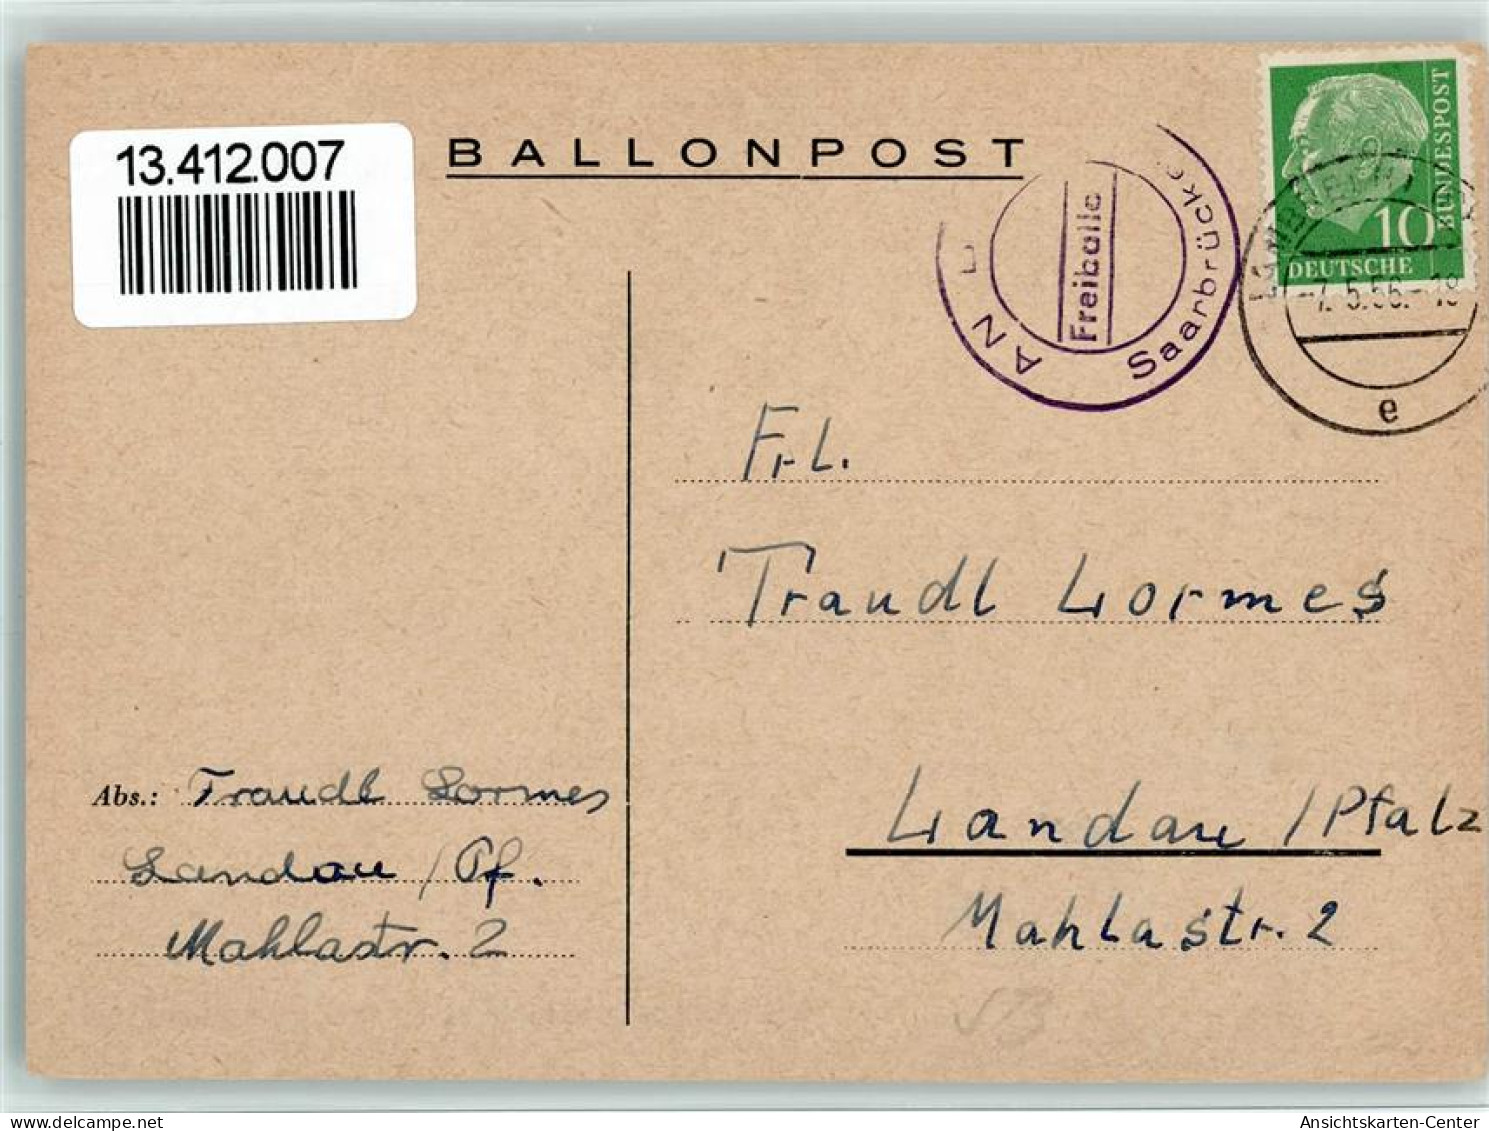 13412007 - Ballonpost Freiiballon Saarbruecken 1956 - Balloons